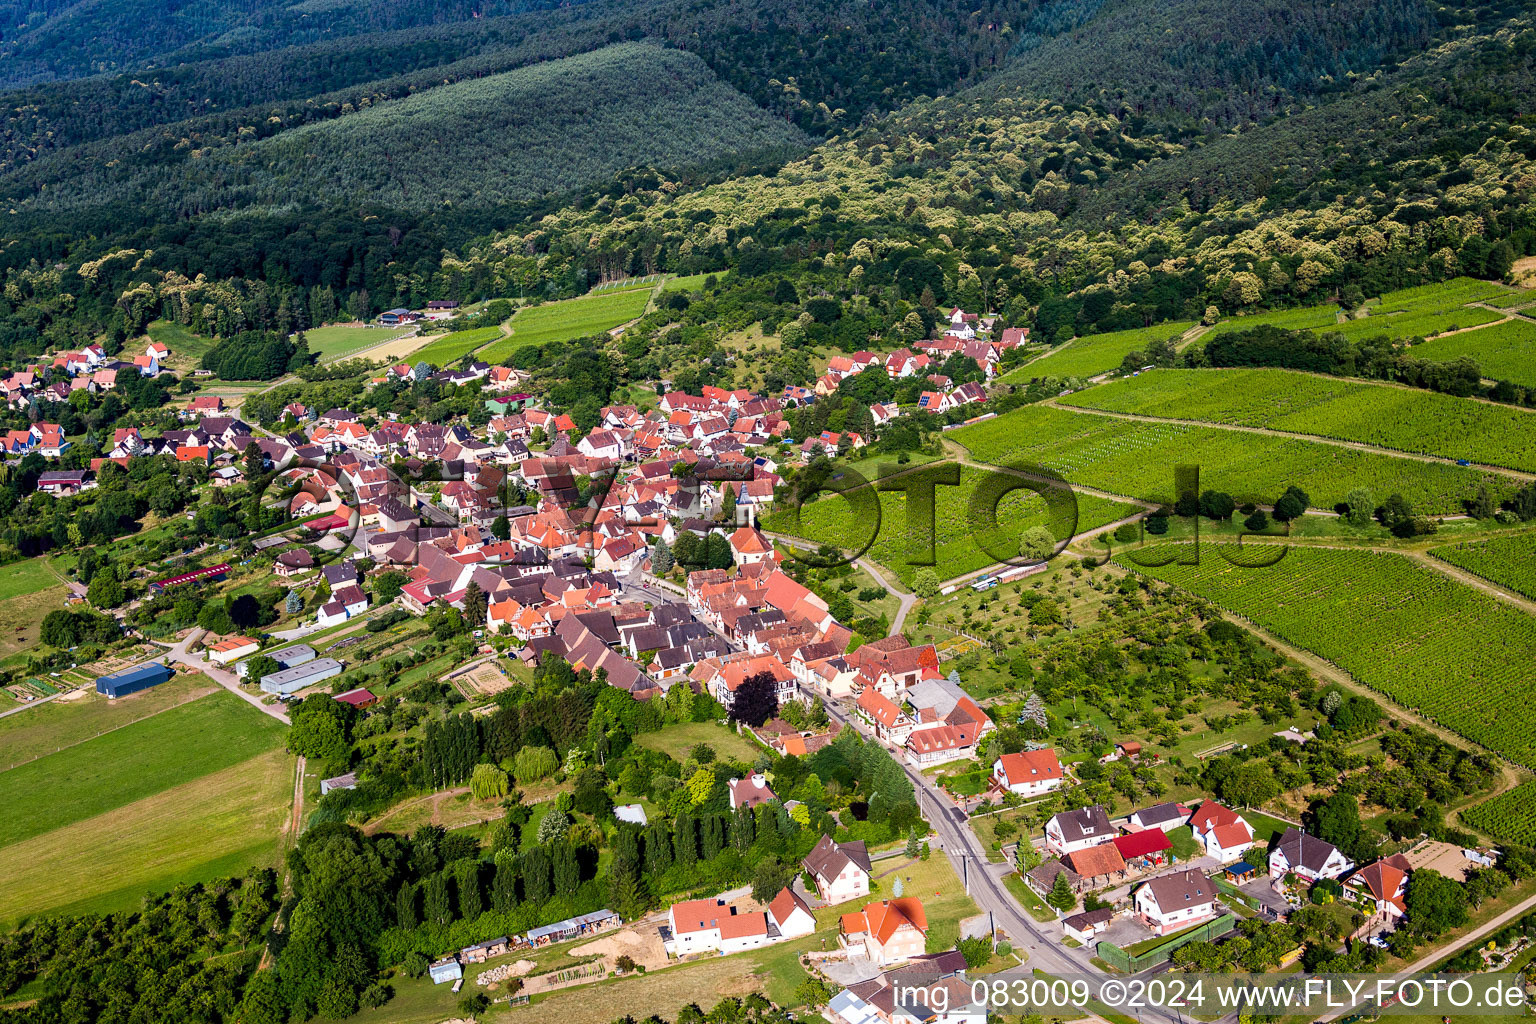 Luftbild von Dorf - Ansicht am Rande von landwirtschaftlichen Feldern und Nutzflächen in Rott in Grand Est im Bundesland Bas-Rhin, Frankreich